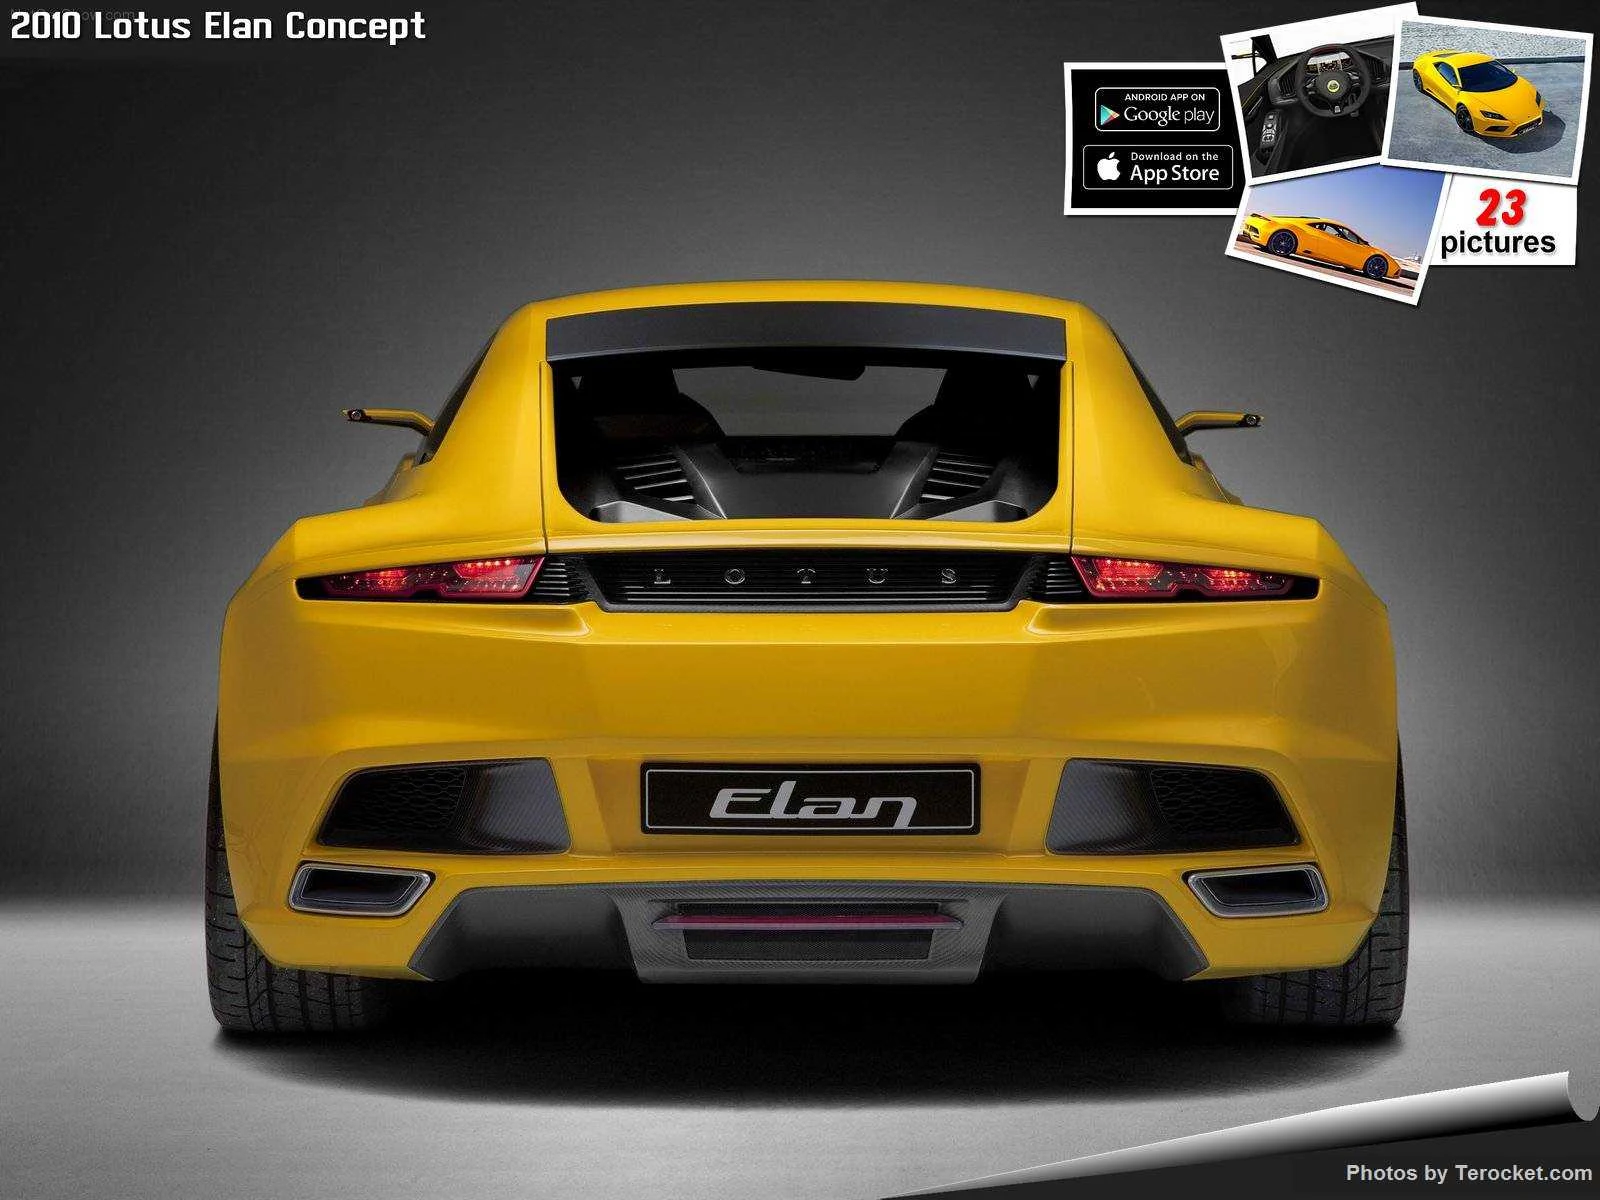 Hình ảnh siêu xe Lotus Elan Concept 2010 & nội ngoại thất